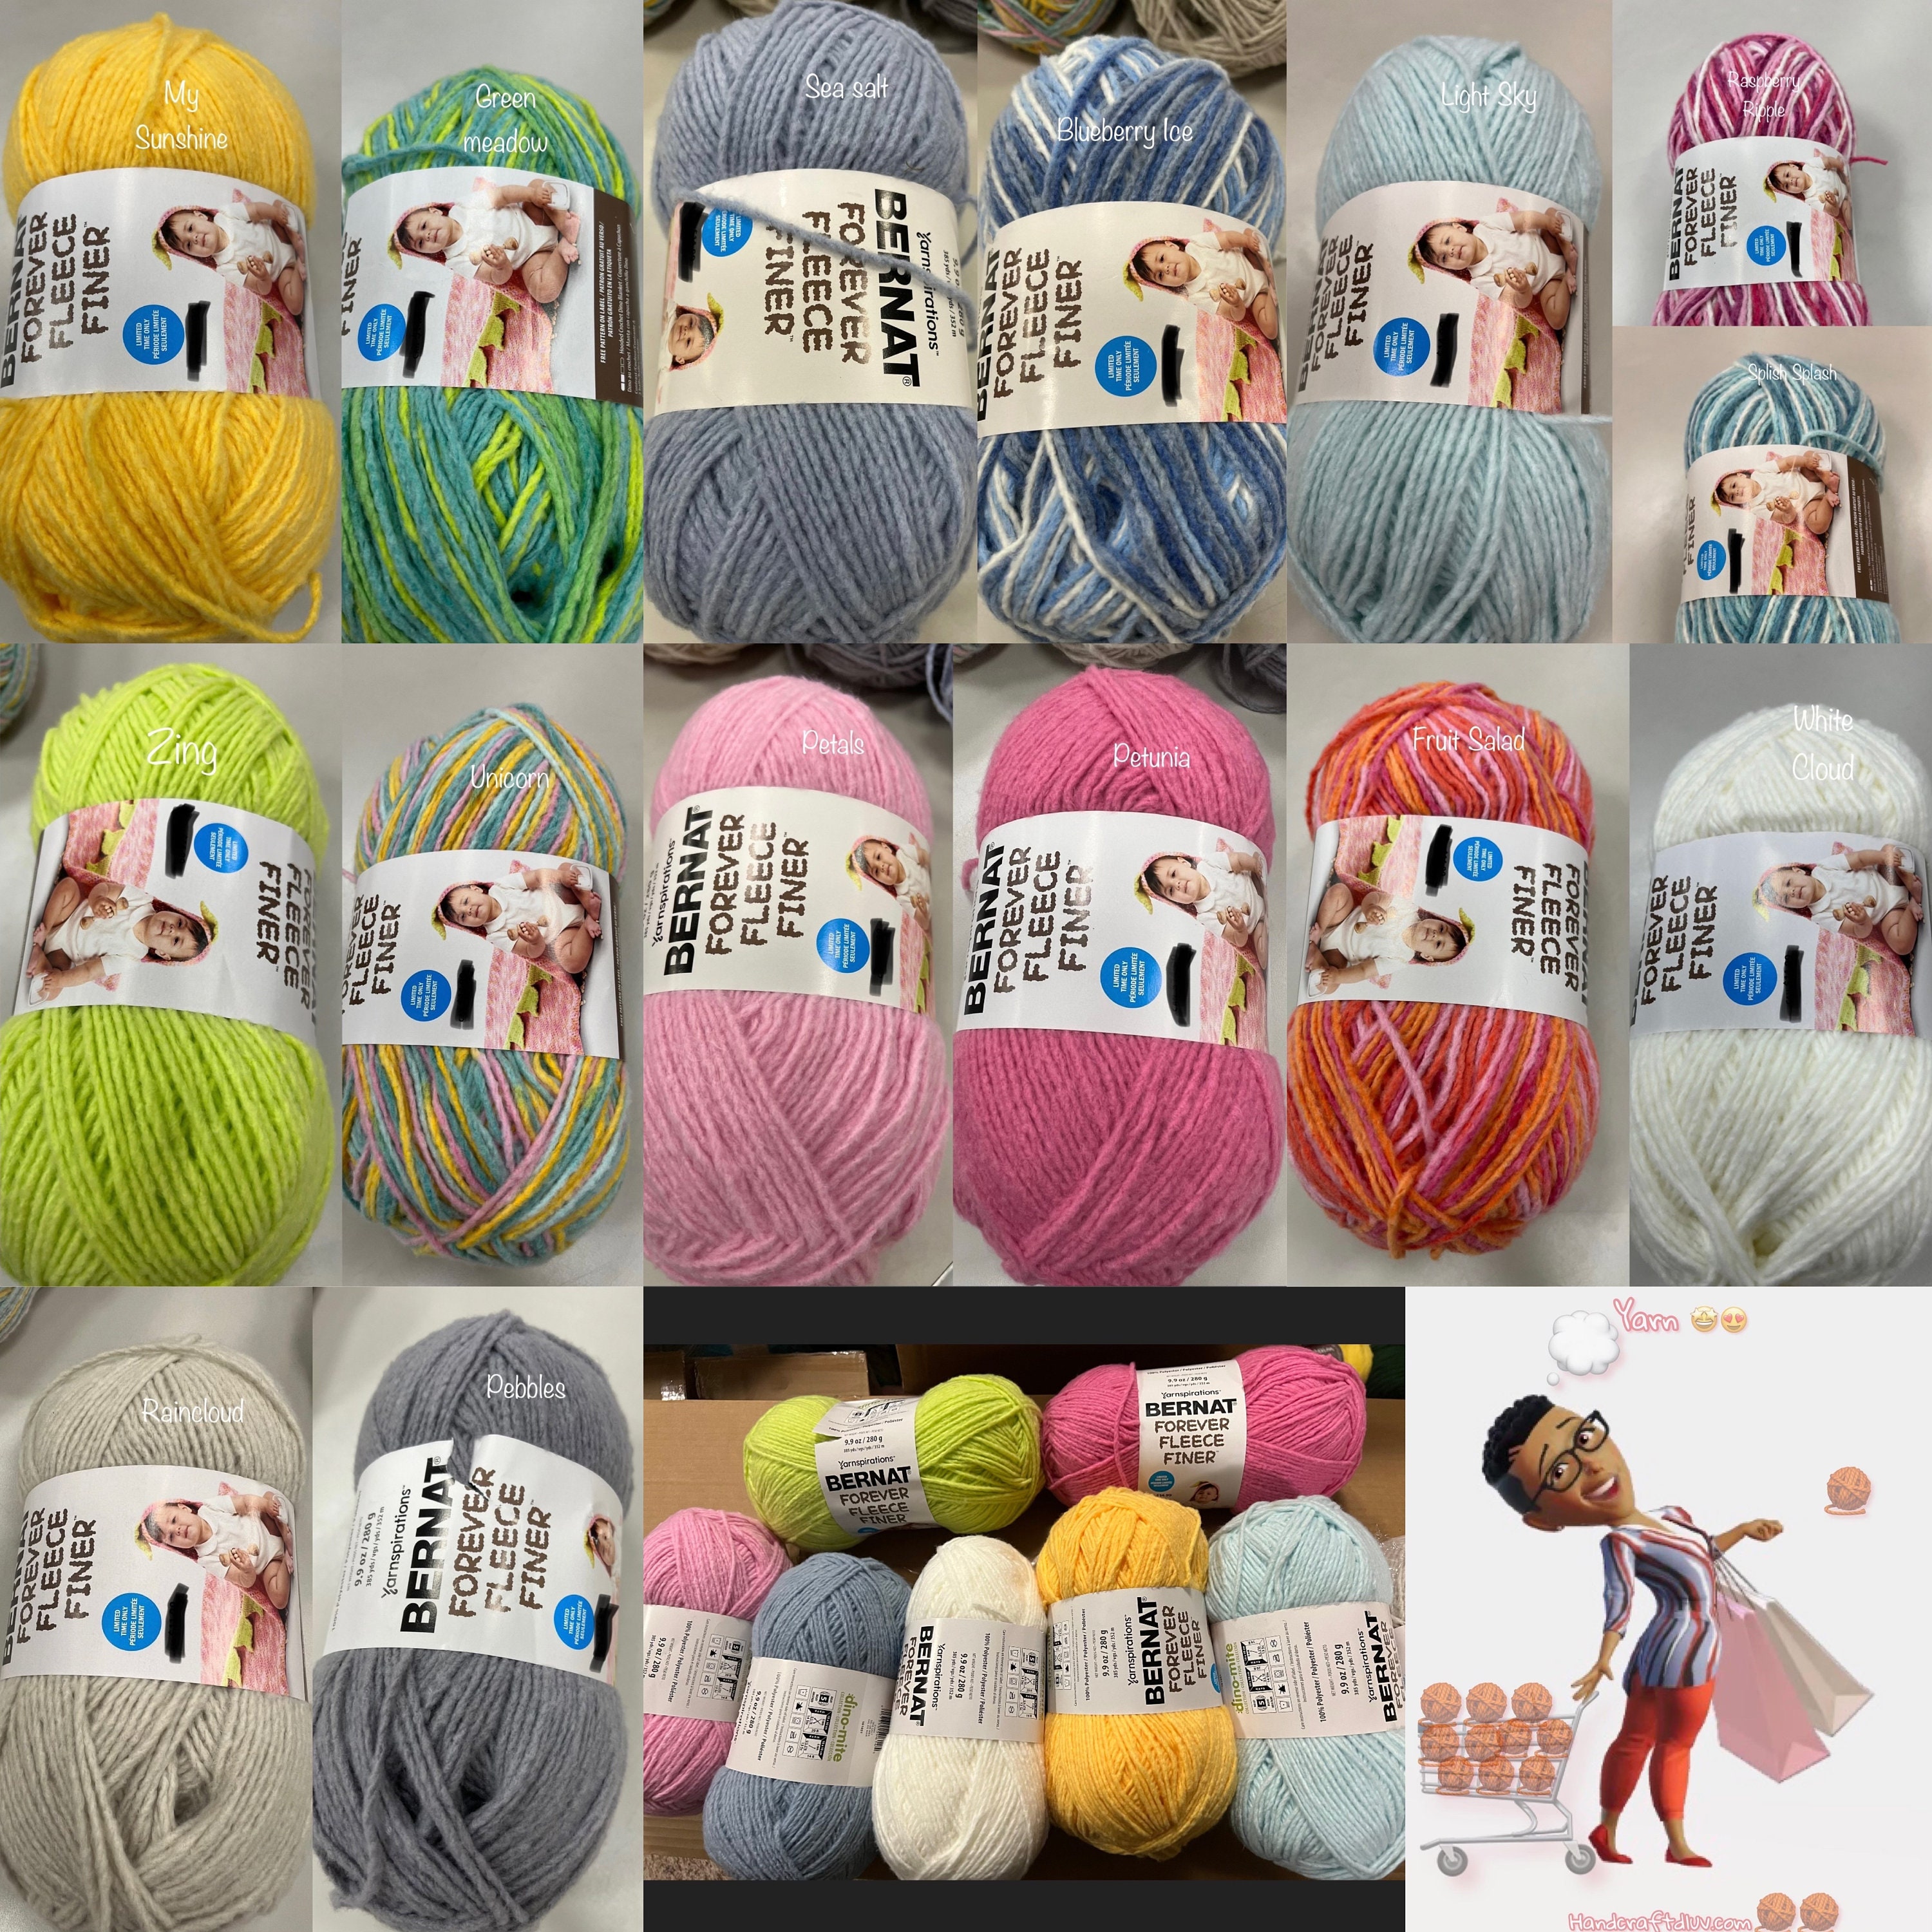  Soft Yarn for Crocheting - 2400 Yards Crochet Yarn for  Crocheting and Knitting Yarn, Amigurumi Yarn for Knitting, Acrylic Yarn  Bulk, Perfect Yarn for Crafts, Crocheting Yarn Set - 24 Yarn